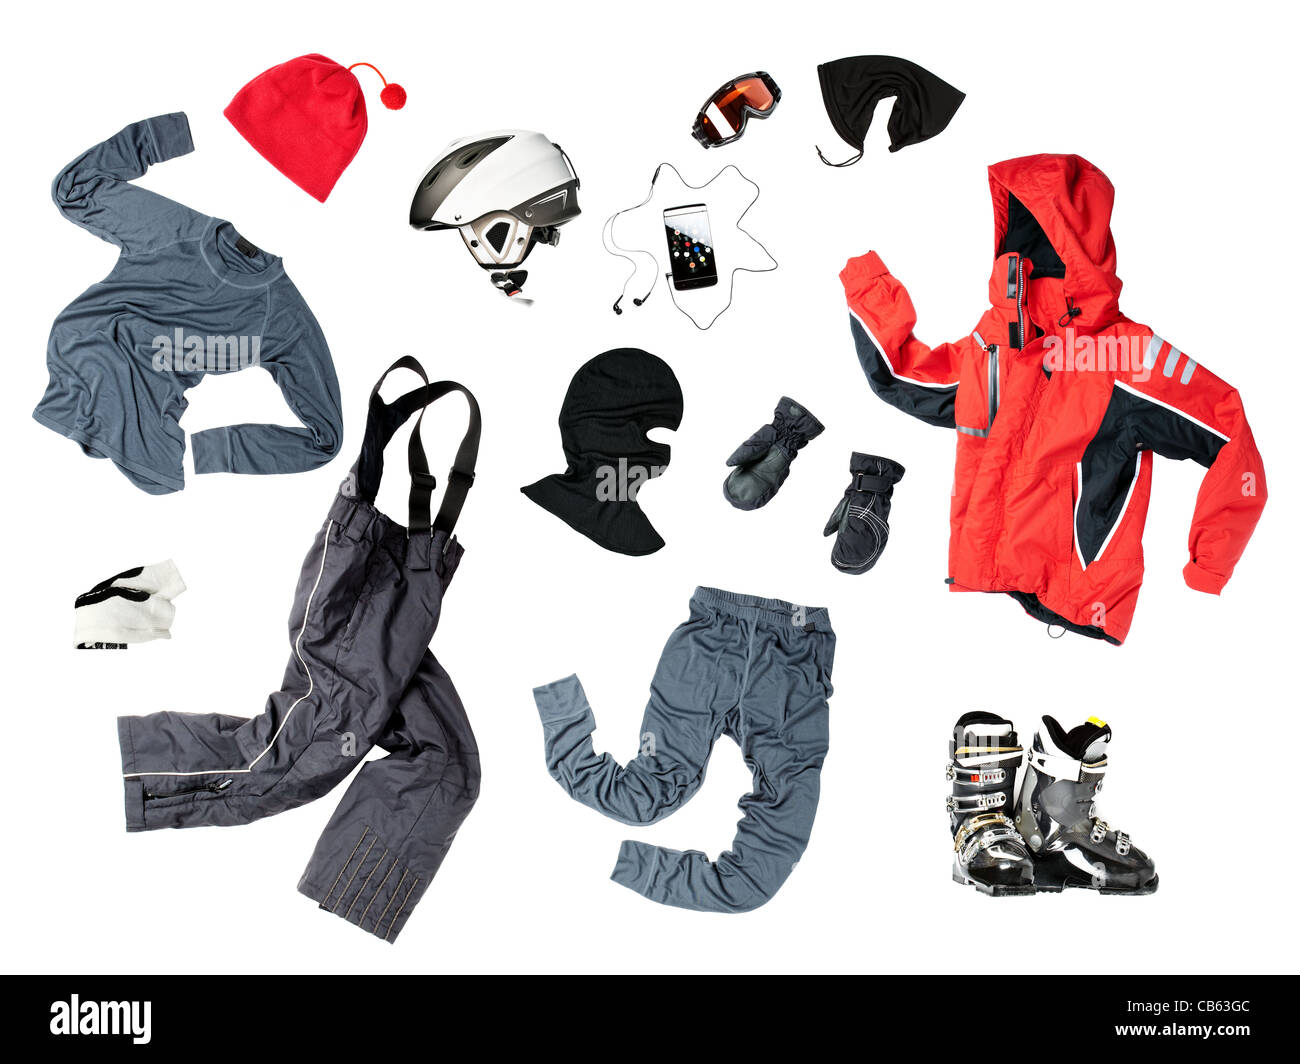 L'ensemble de tous les skieurs de l'enfant nécessaire Vêtements et accessoires pour l'hiver à l'extérieur, isolé sur fond blanc Banque D'Images